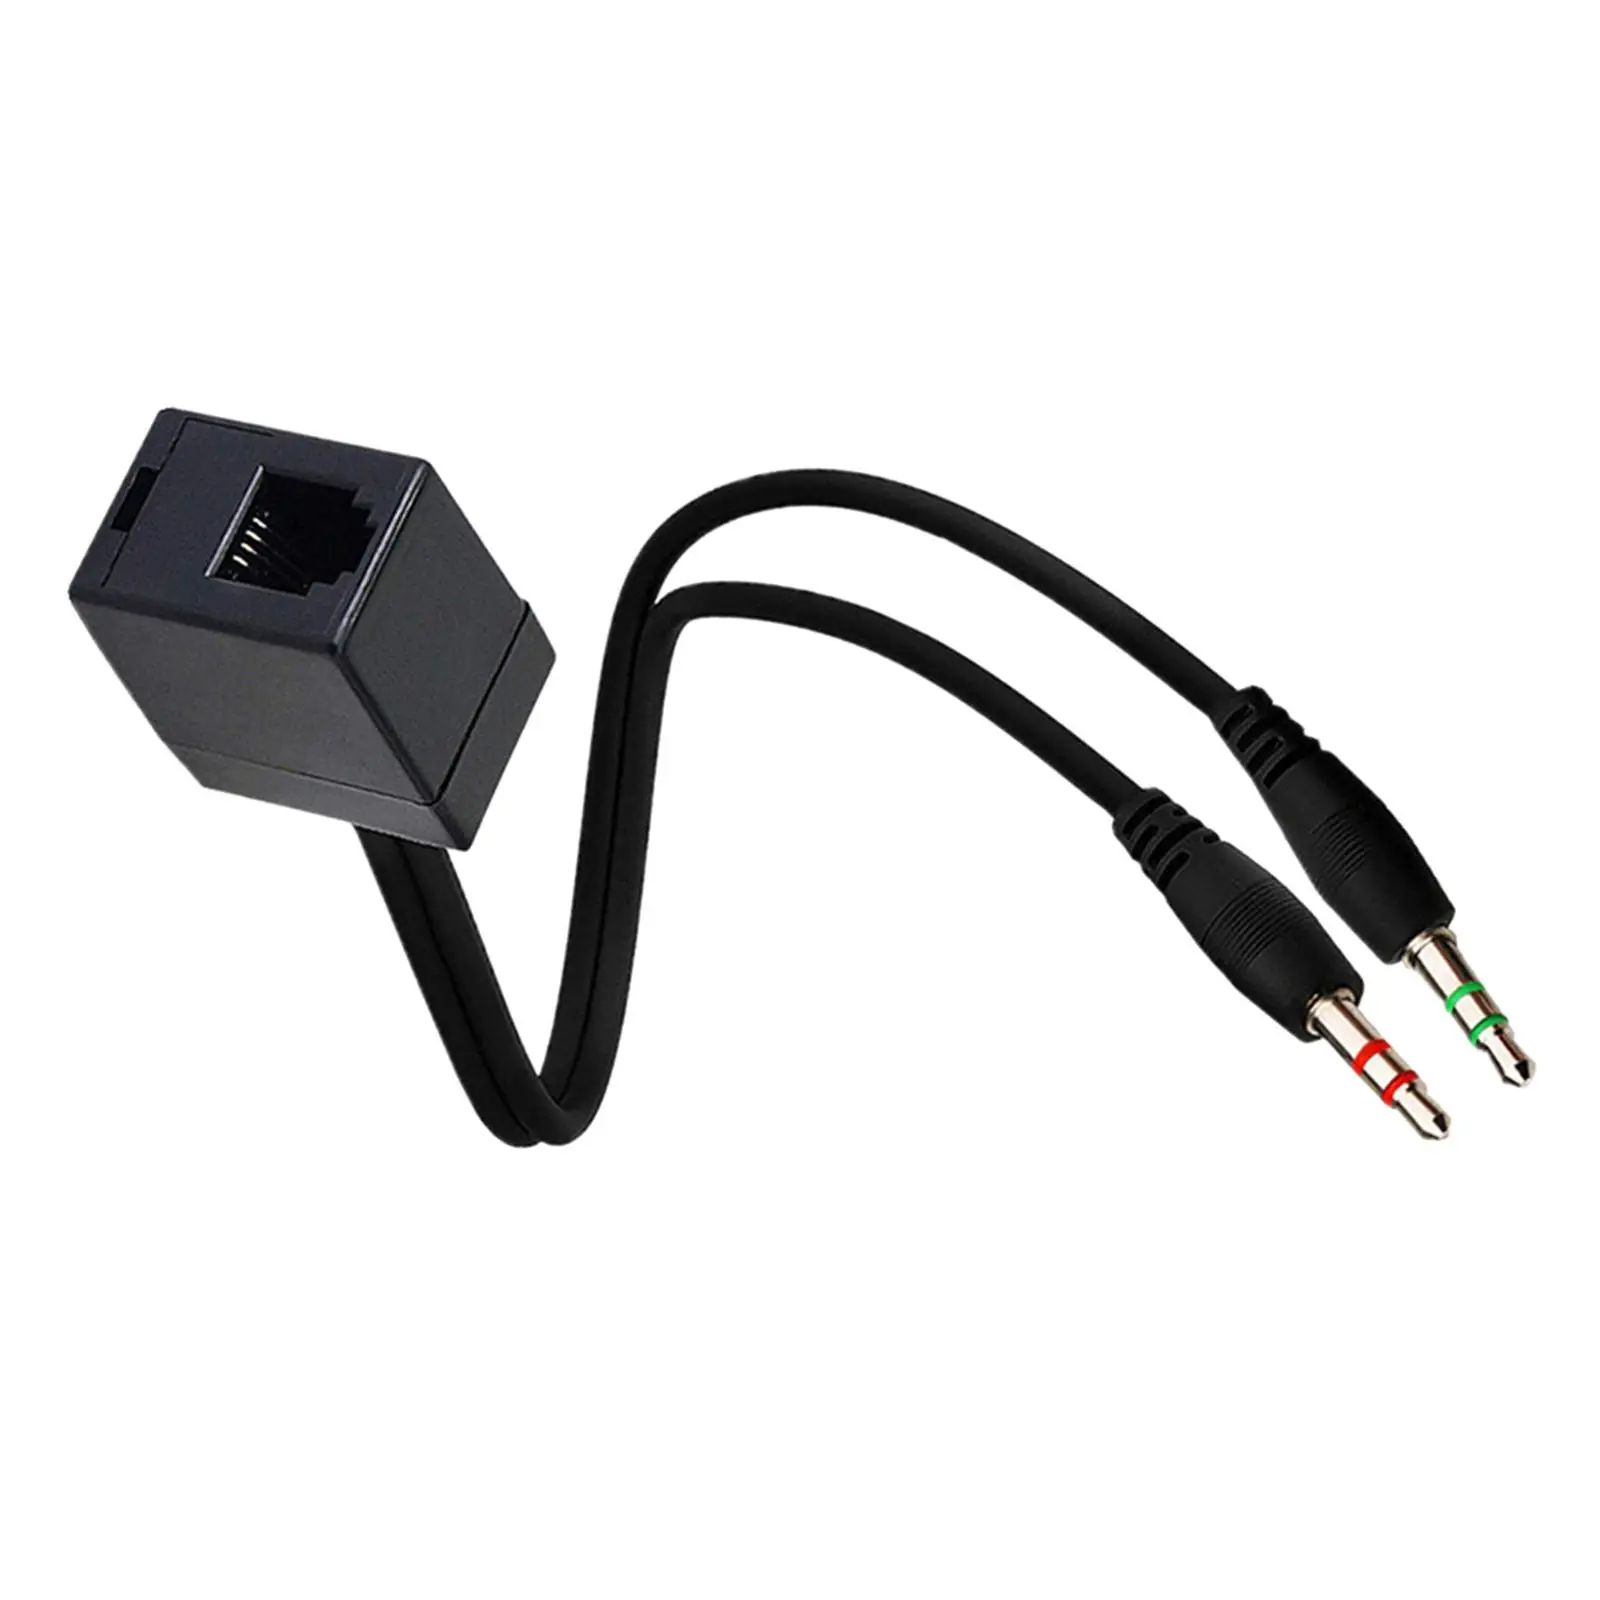 Портативный женский кабель-адаптер RJ9 к мужскому 3,5 мм, кабель для преобразования телефонной гарнитуры в ПК, 35 см, черный